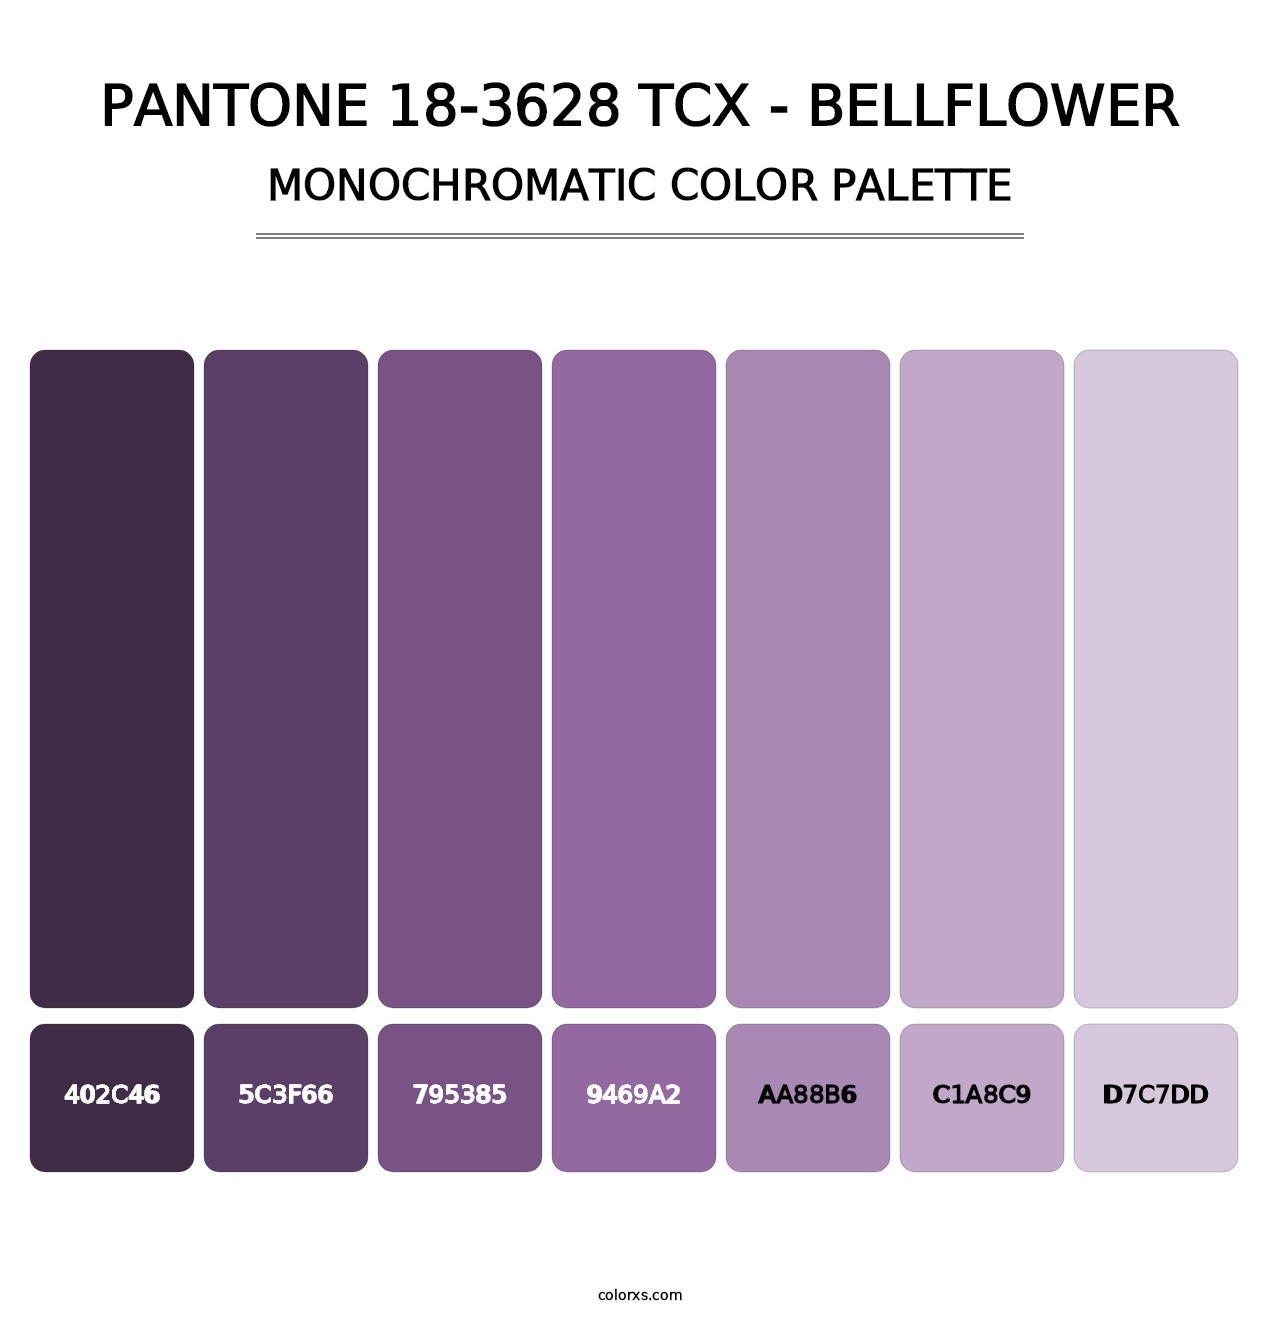 PANTONE 18-3628 TCX - Bellflower - Monochromatic Color Palette